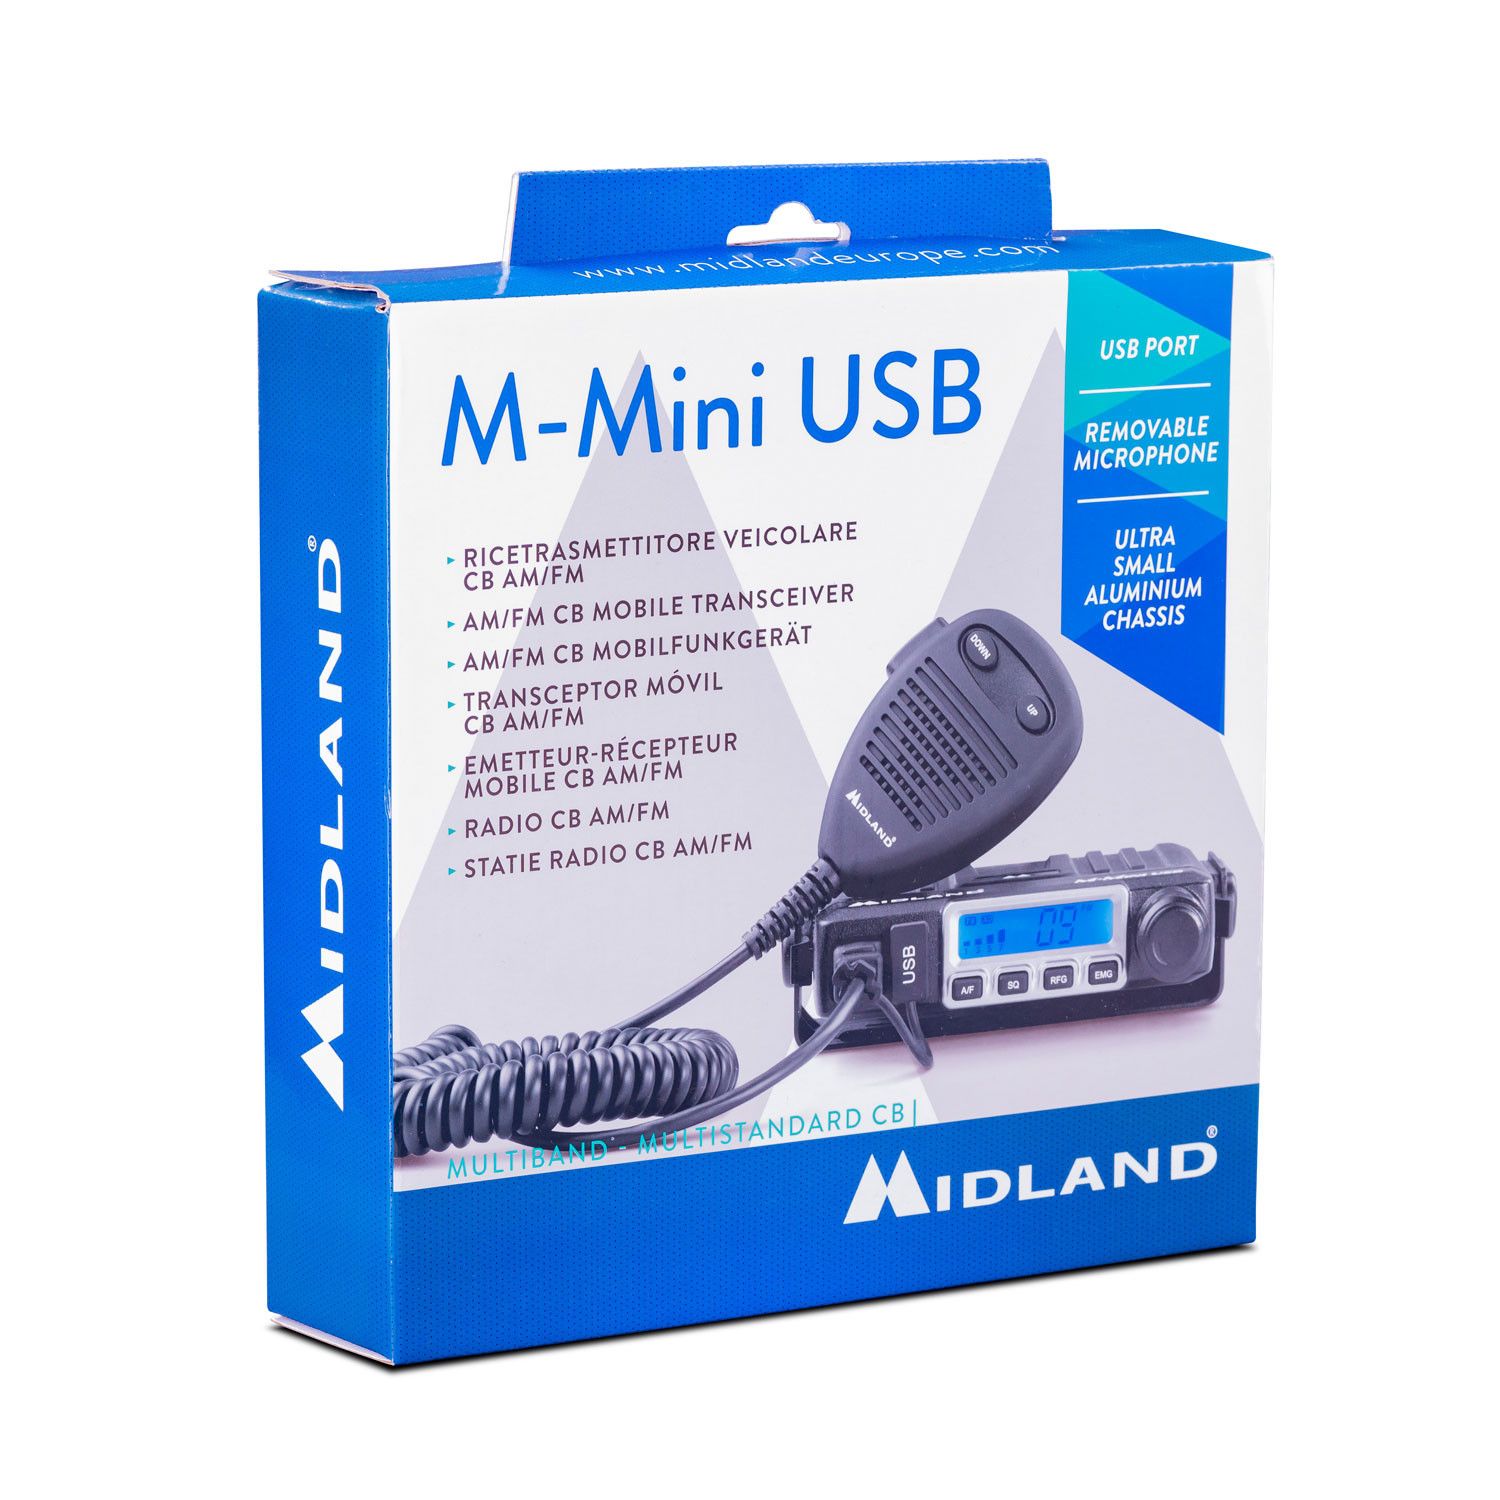 Midland M-Mini USB, CB-Funkgerät Multistandard_8011869203145_MIDLAND_#6